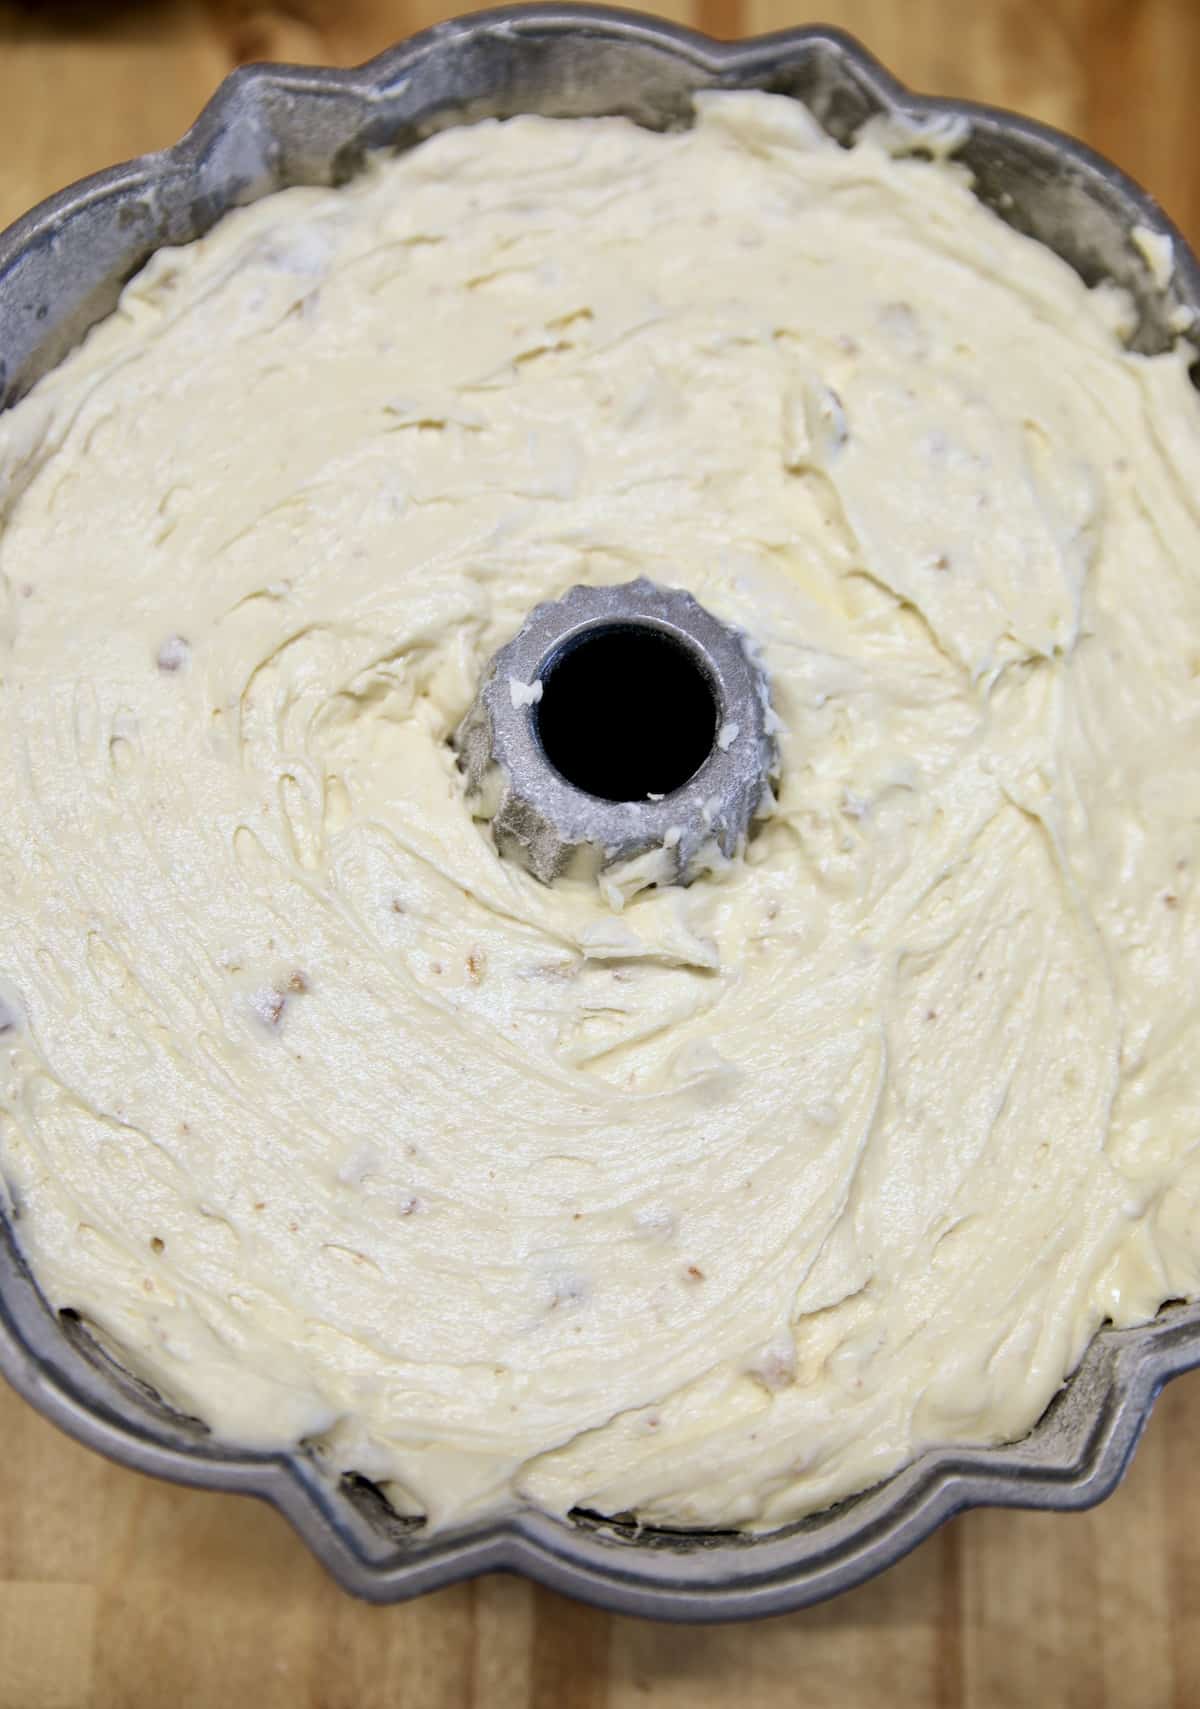 Pecan pound cake batter in bundt pan.